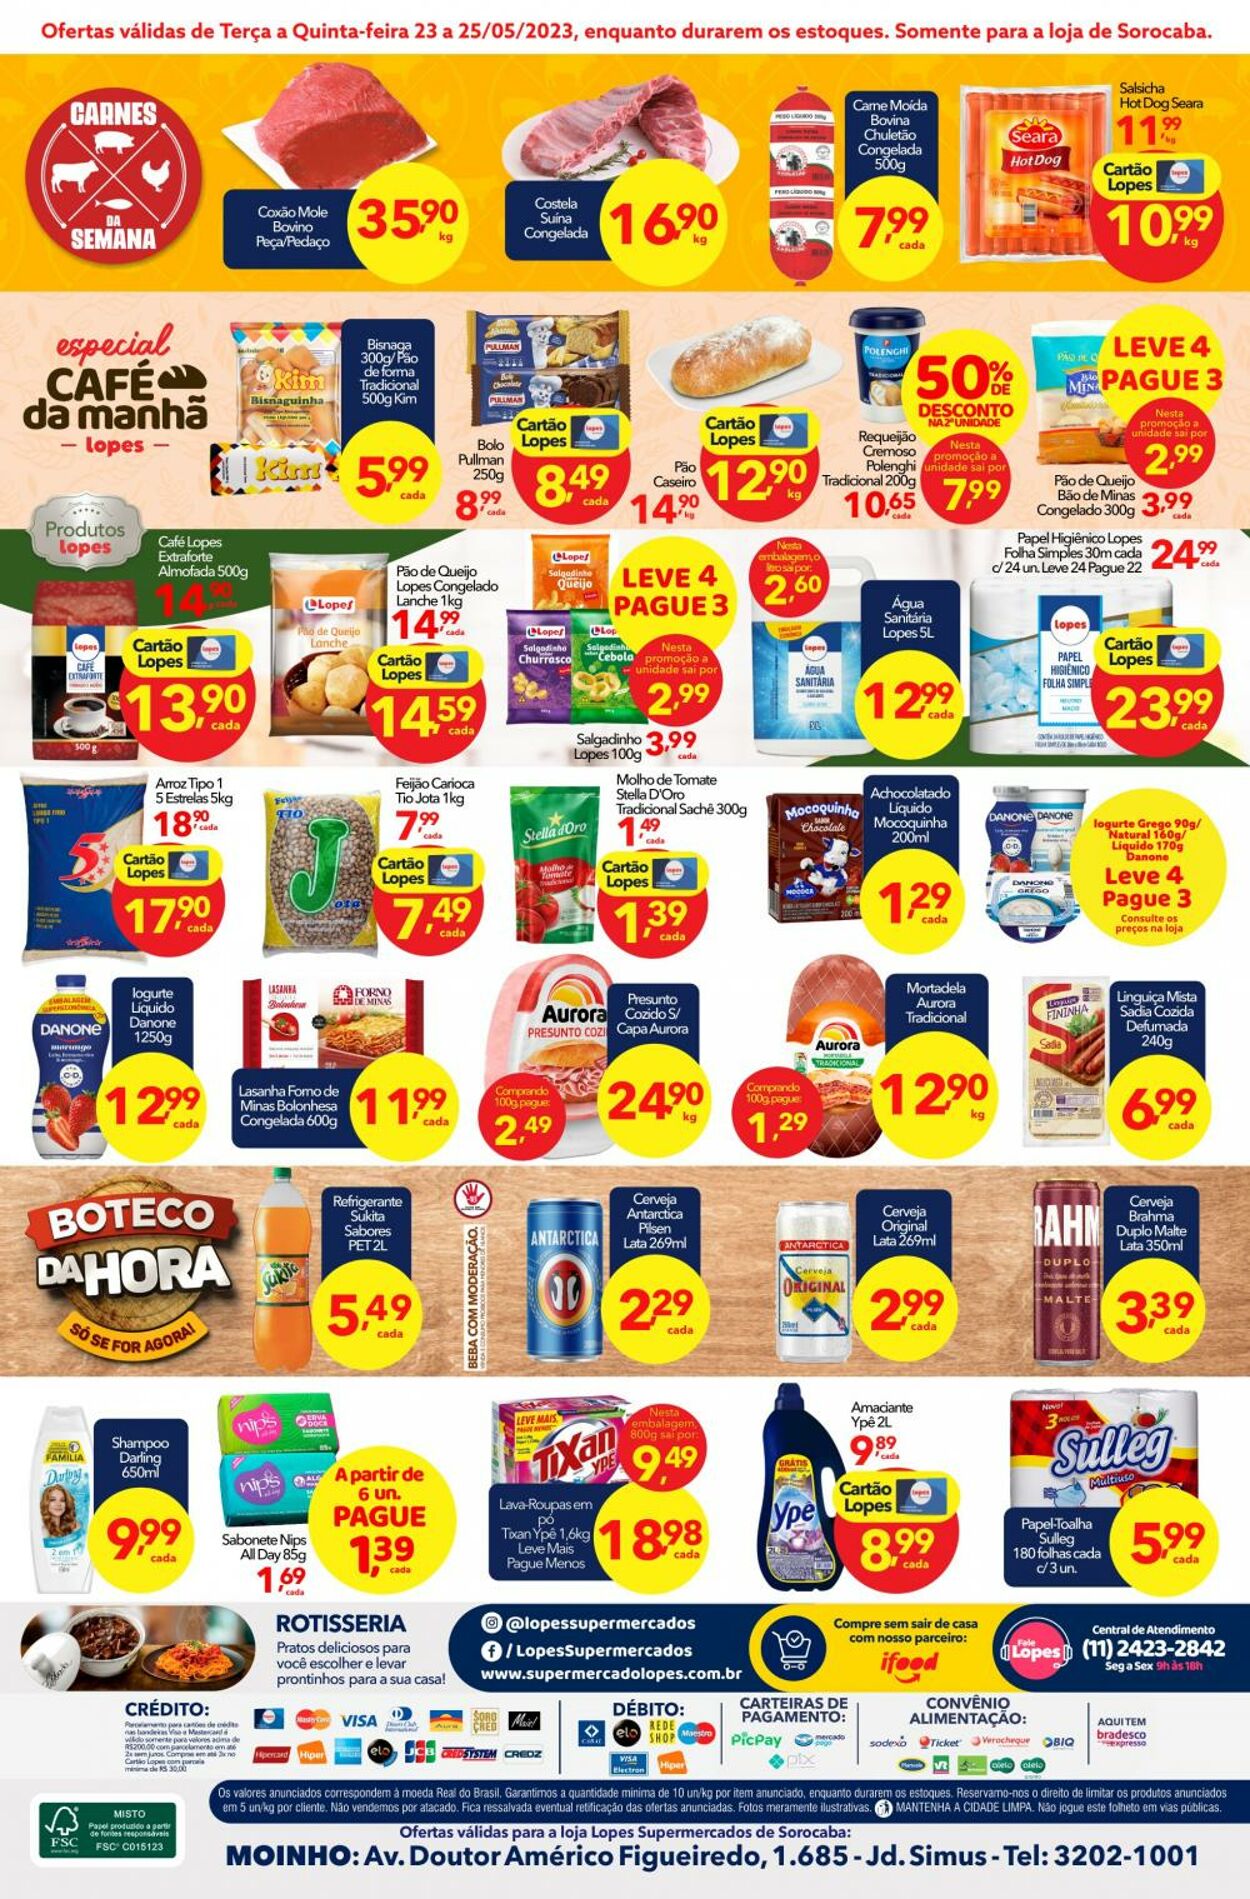 Folheto Lopes Supermercados 23.05.2023 - 25.05.2023